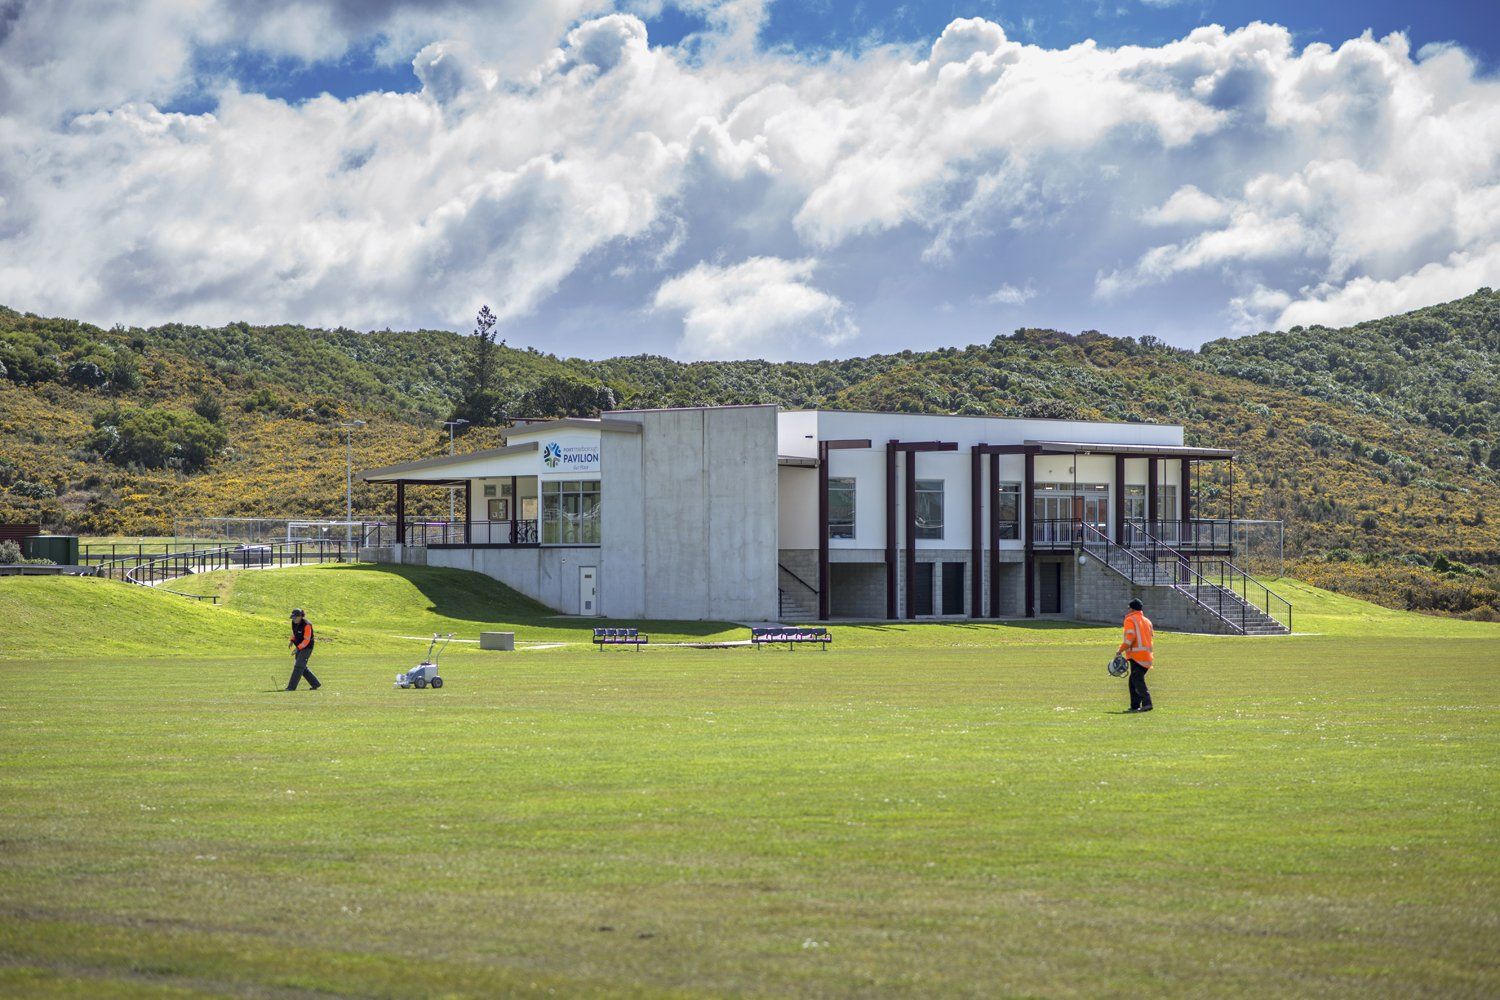 Port Marlborough Pavilion in Picton, Marlborough, NZ